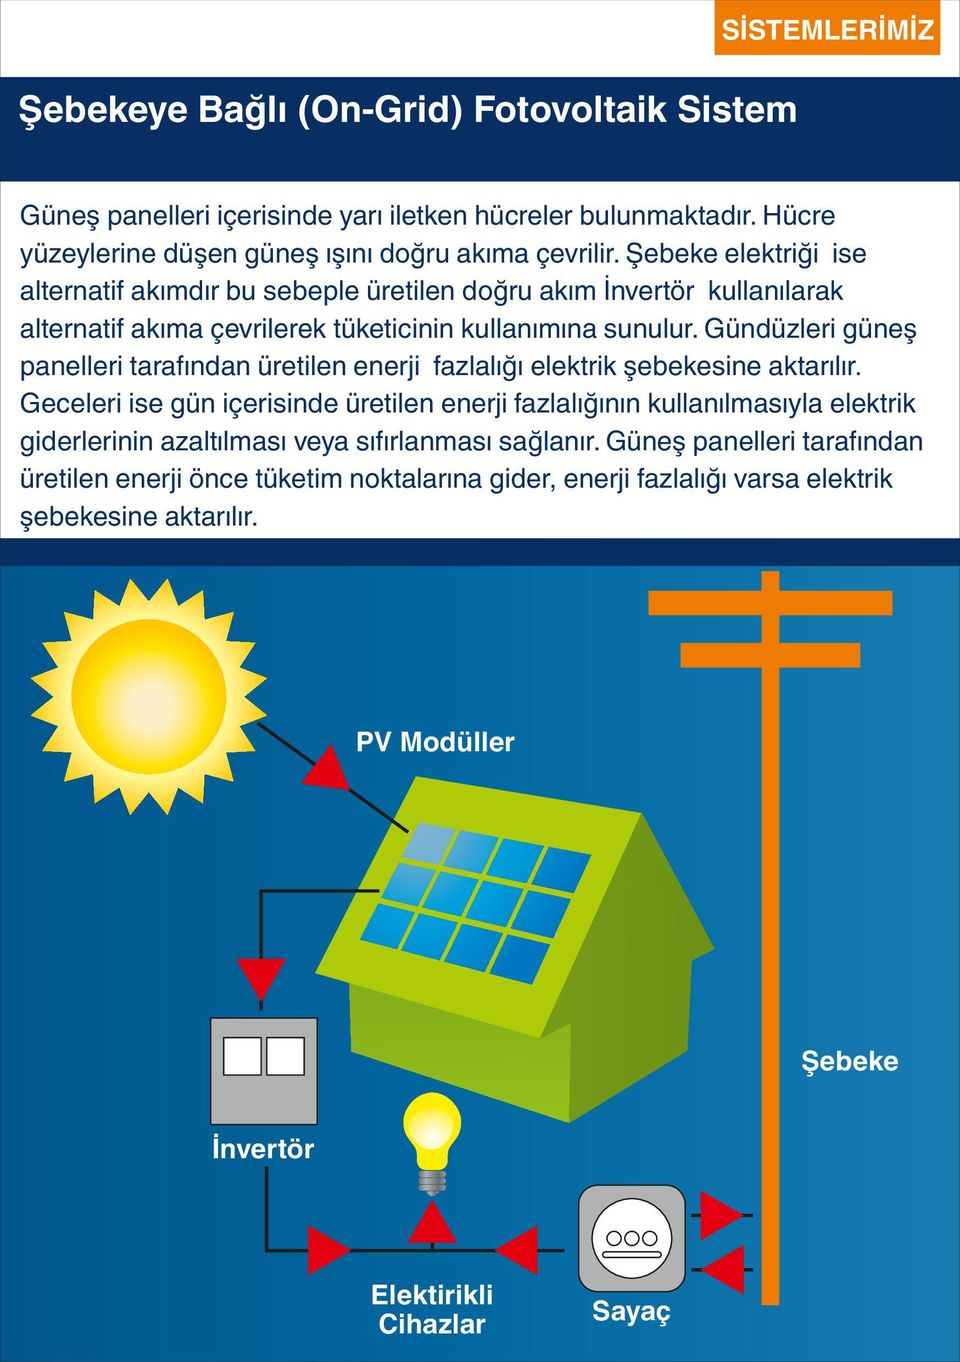 Gündüzleri güneş panelleri tarafından üretilen enerji fazlalığı elektrik şebekesine aktarılır.